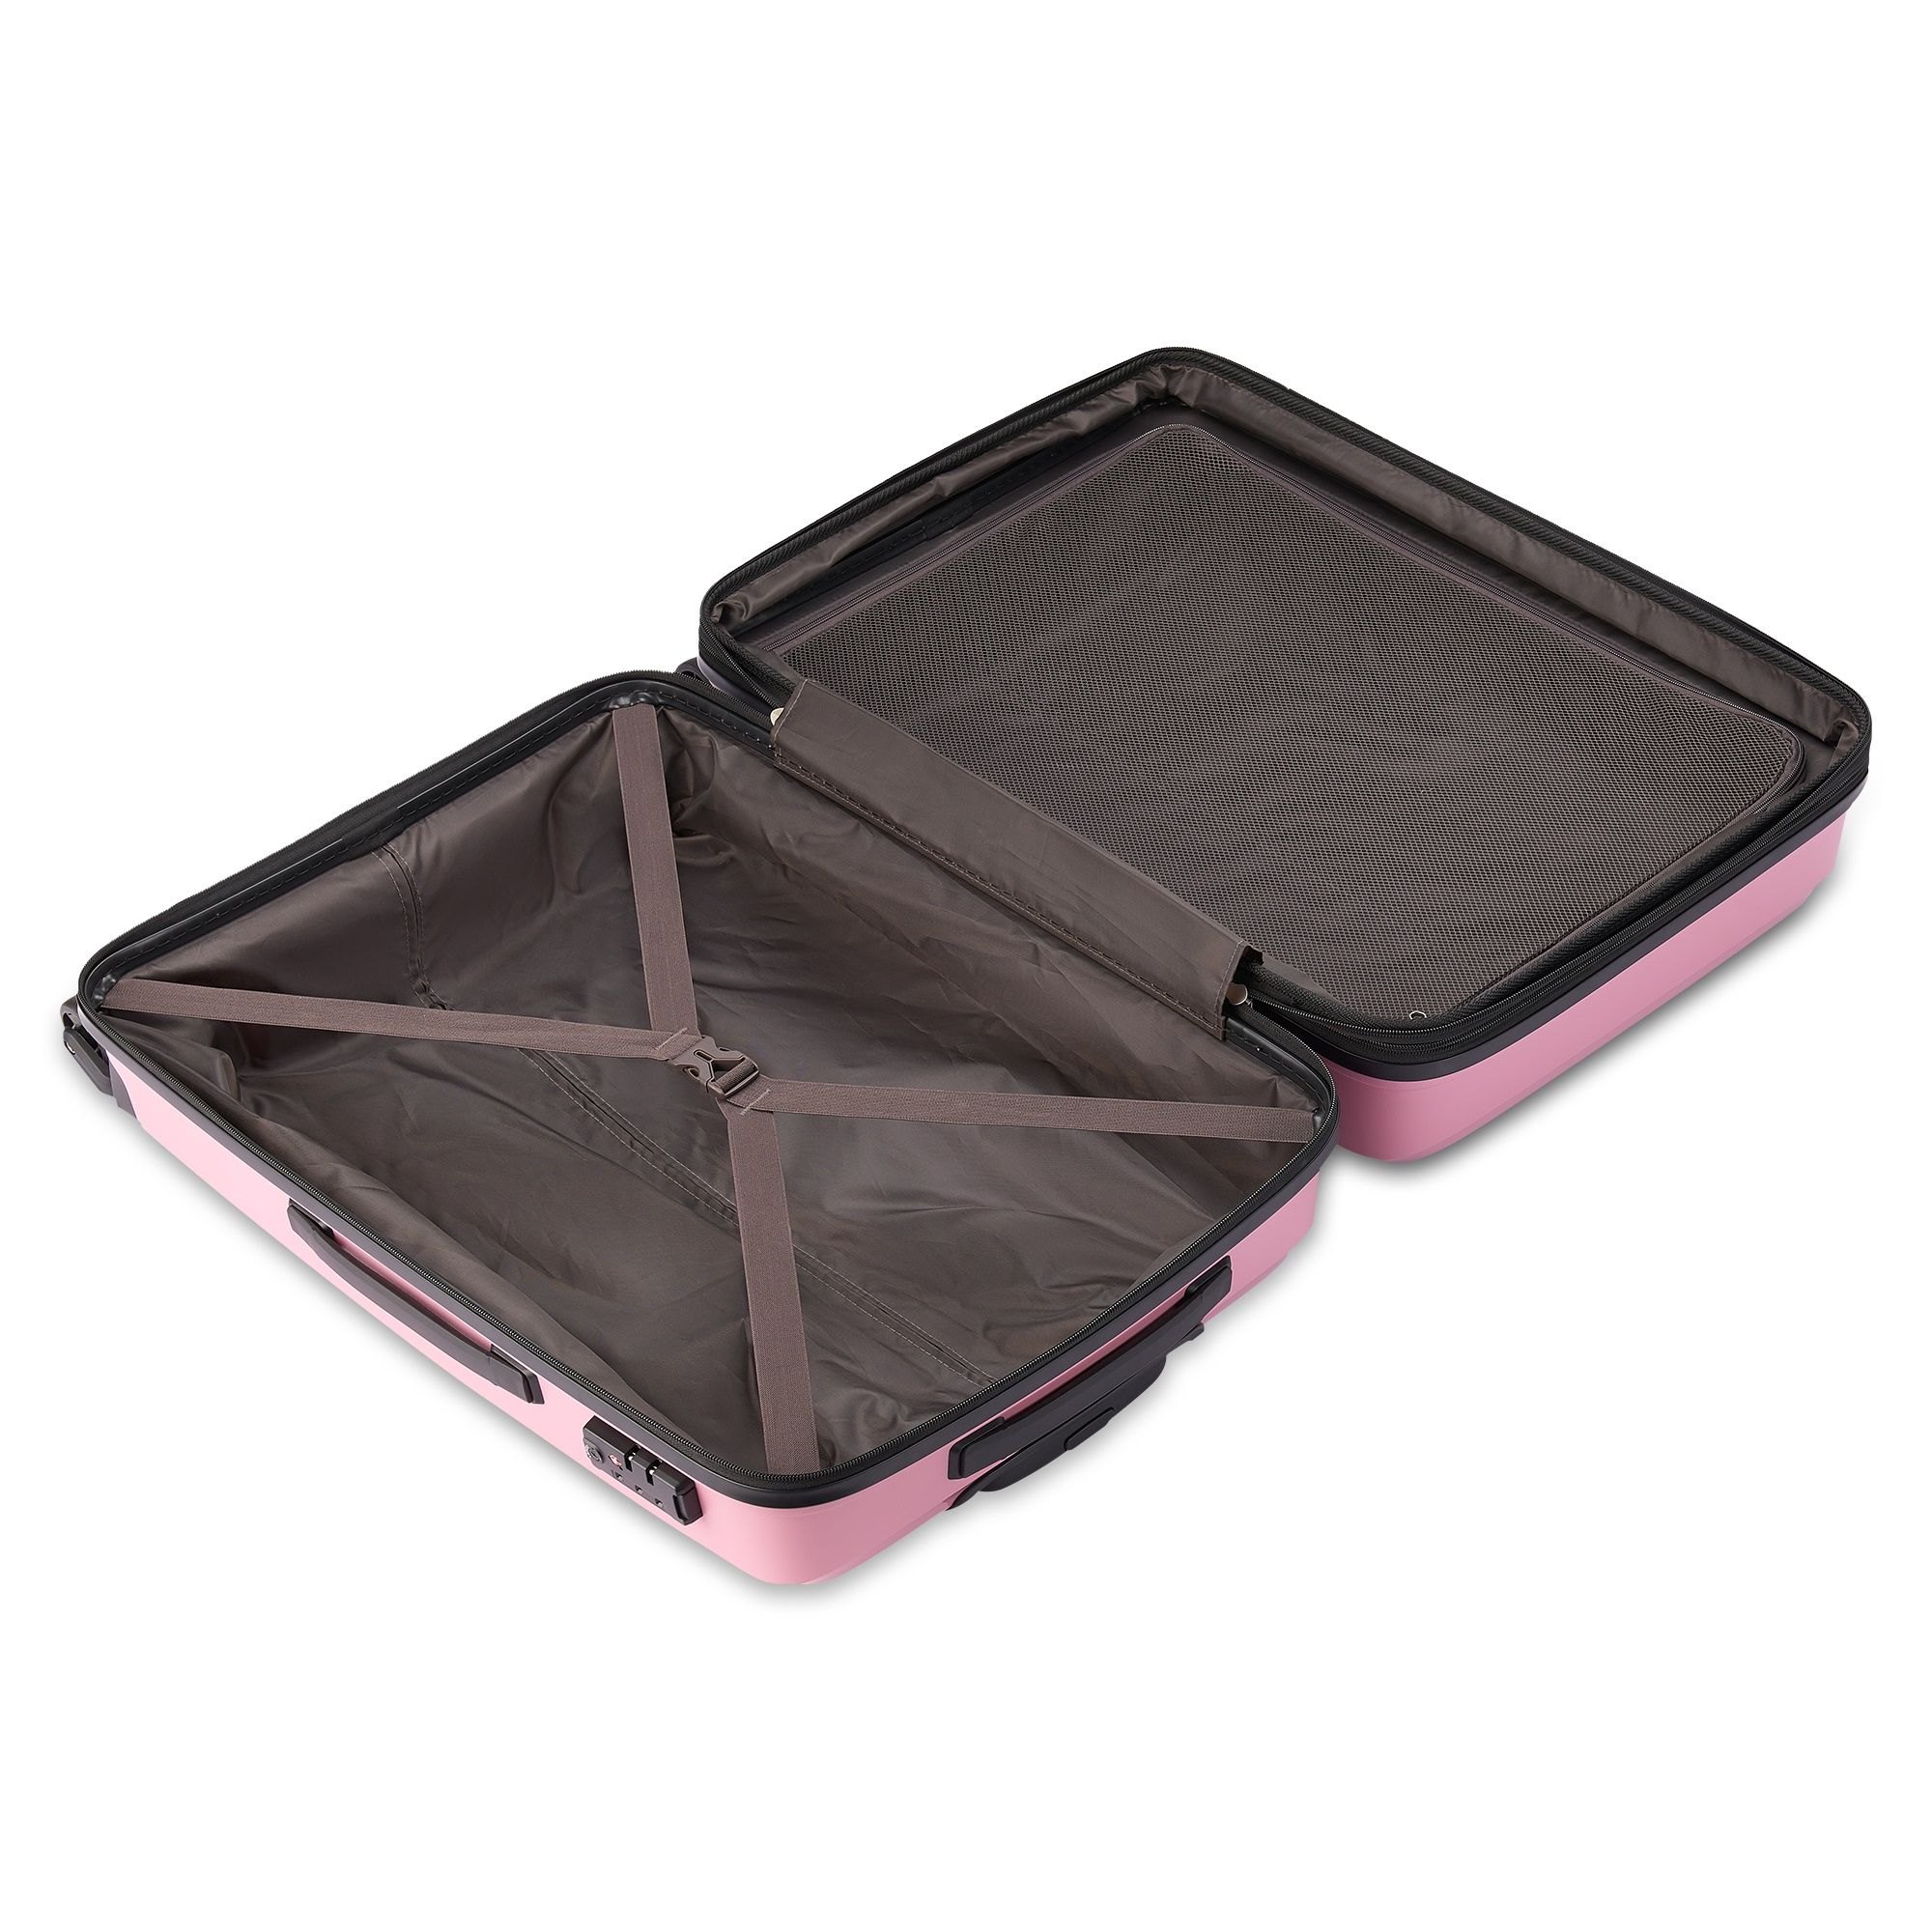 Tripp Chic Rose Medium Suitcase - Tripp Ltd